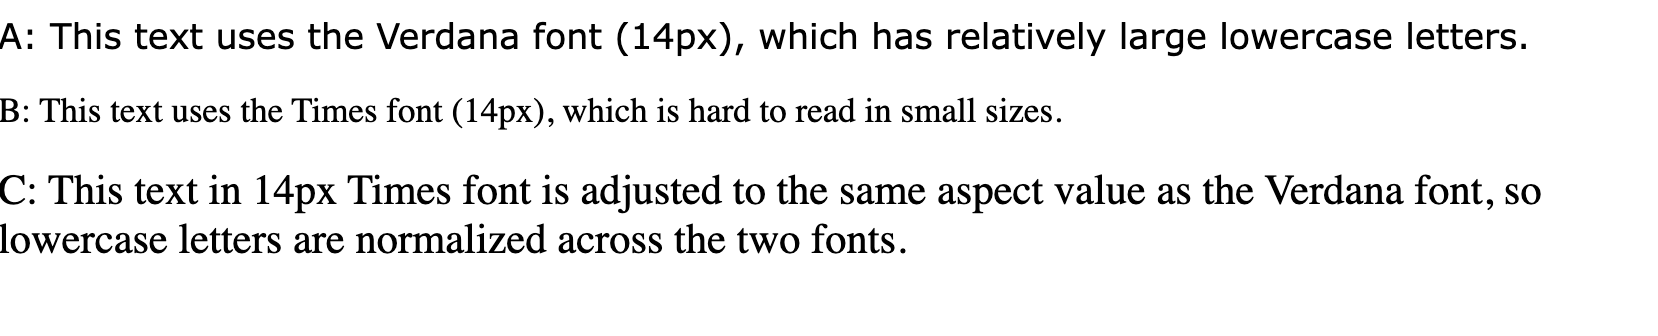 &#39;Bu metinde nispeten büyük küçük harfler bulunan verdana yazı tipi (14 piksel) kullanılıyor&#39;, &#39;Bunda küçük boyutlarda okunması zor Times yazı tipi (14 piksel) kullanılıyor&quot; yazan metin satırları ve &quot;14 piksel Kez yazı tipindeki bu metin, Verdana yazı tipiyle aynı en boy değerine ayarlanır. Bu nedenle, küçük harfli yazı tipleri iki yazı tipinde normalleştirilir.